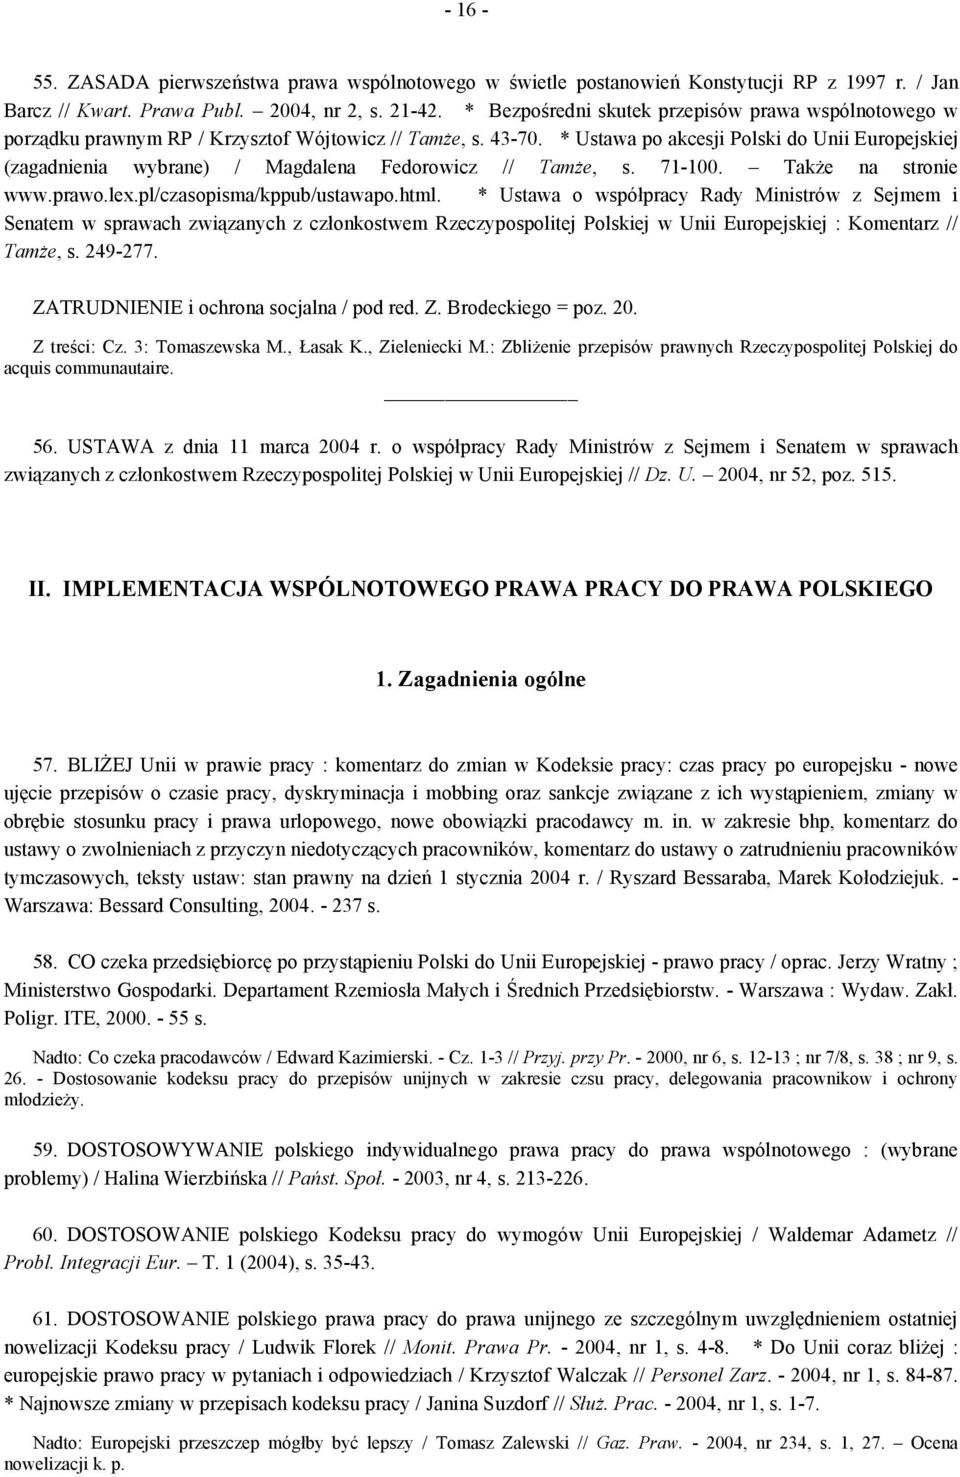 * Ustawa po akcesji Polski do Unii Europejskiej (zagadnienia wybrane) / Magdalena Fedorowicz // Tamże, s. 71-100. Także na stronie www.prawo.lex.pl/czasopisma/kppub/ustawapo.html.